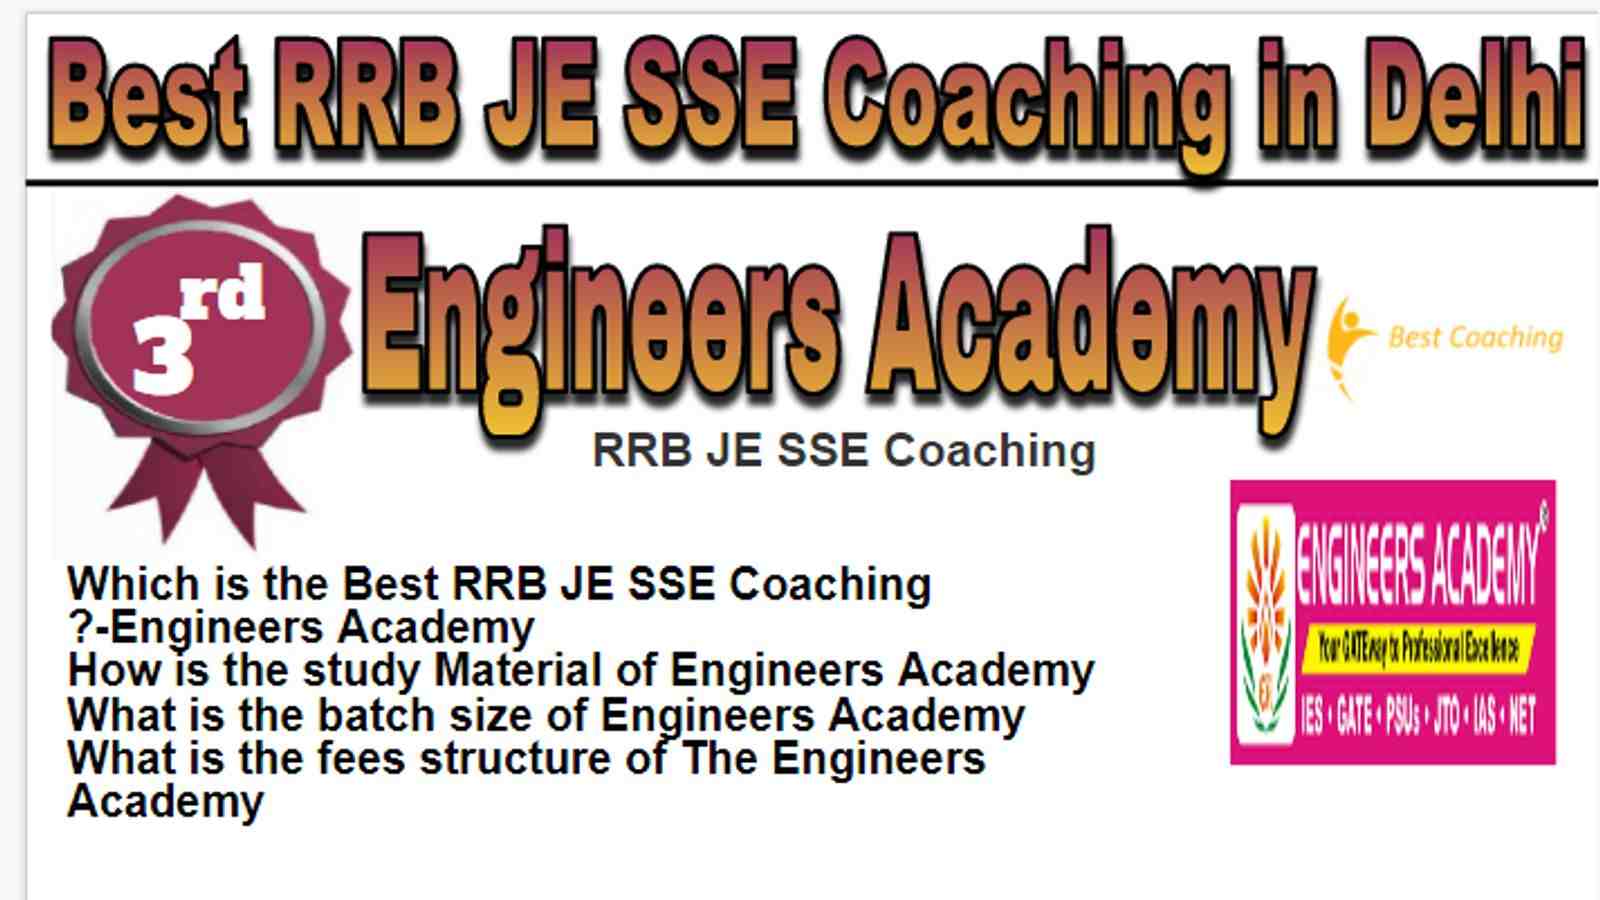 Rank 3 Best RRB JE SSE Coaching in Delhi